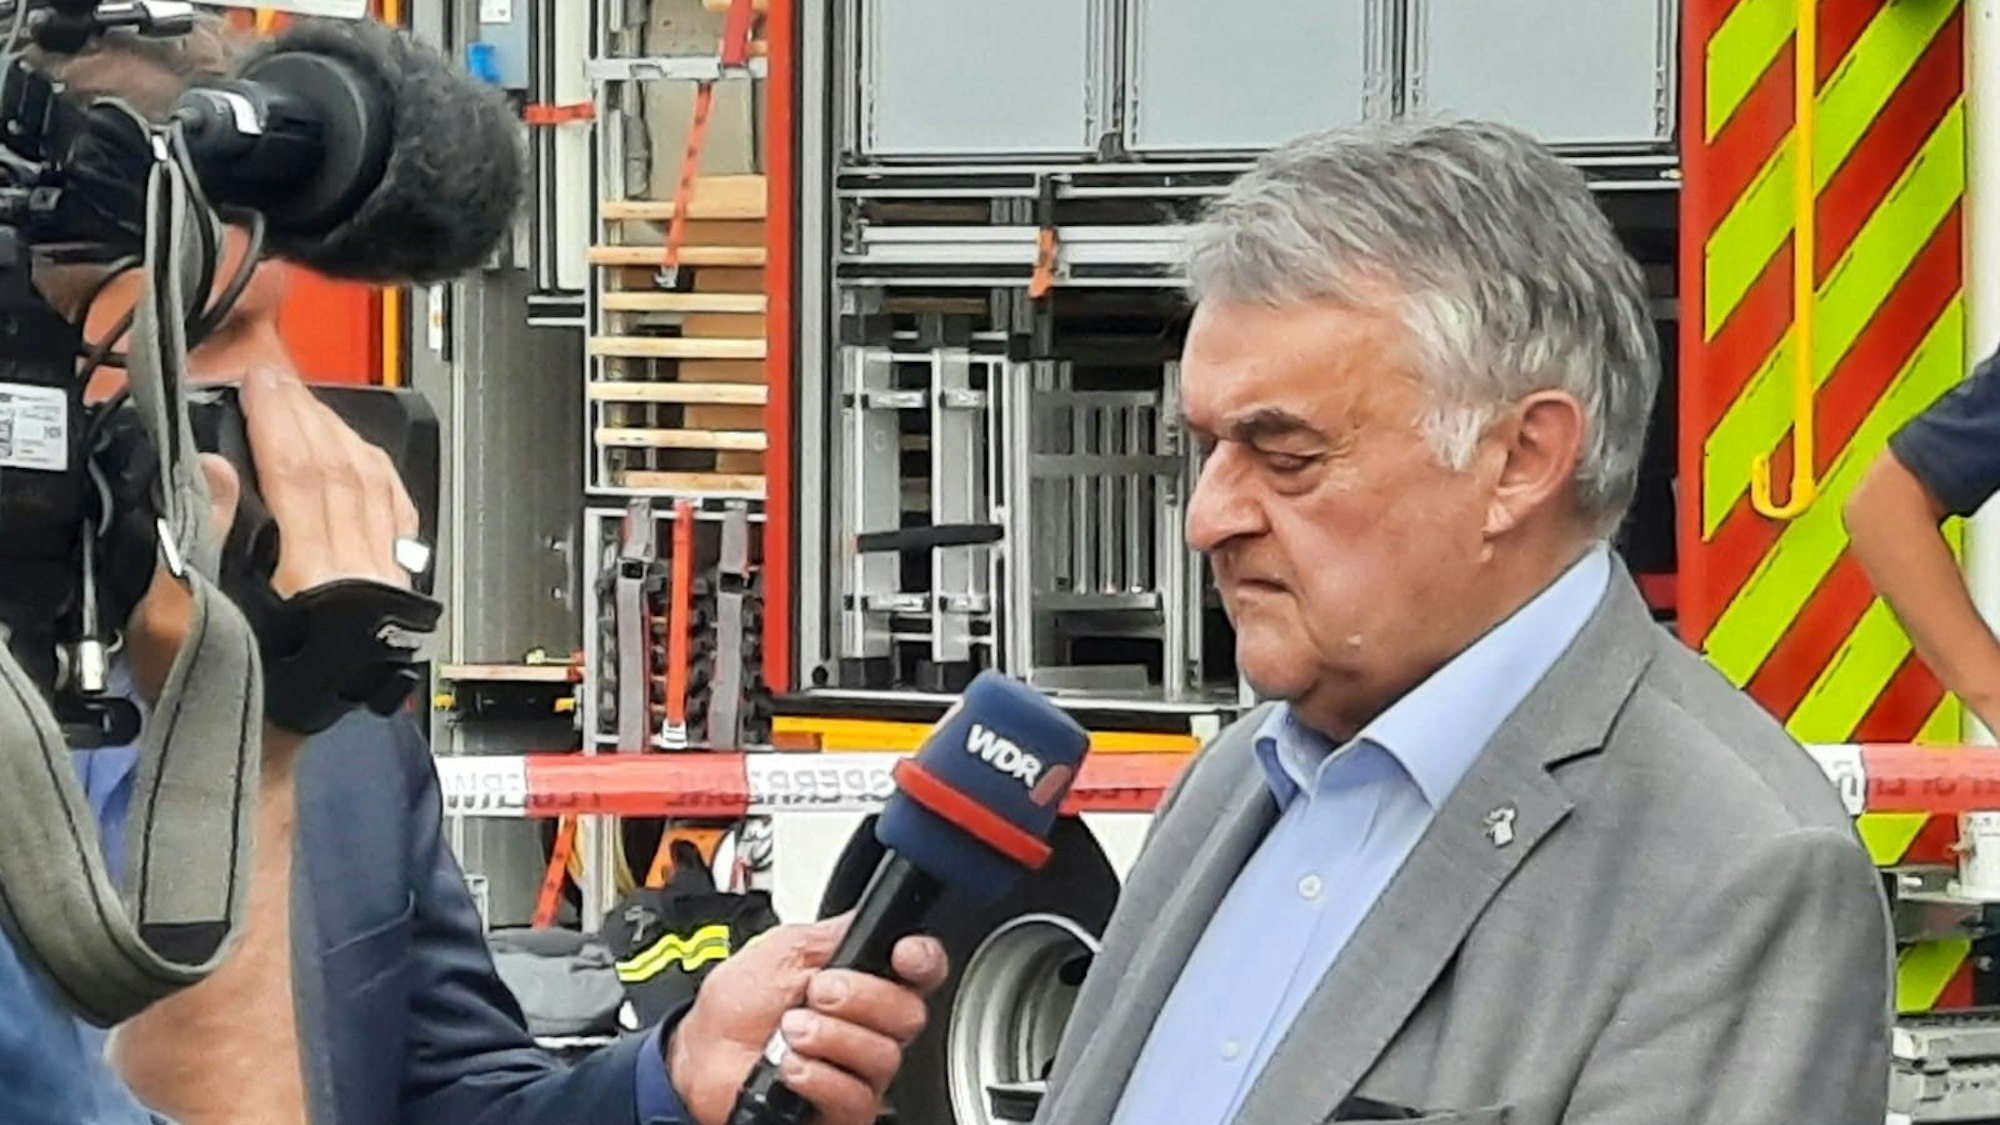 NRW-Innenminister Herbert Reul kam am Abend zum Brandort nach Sankt Augustin